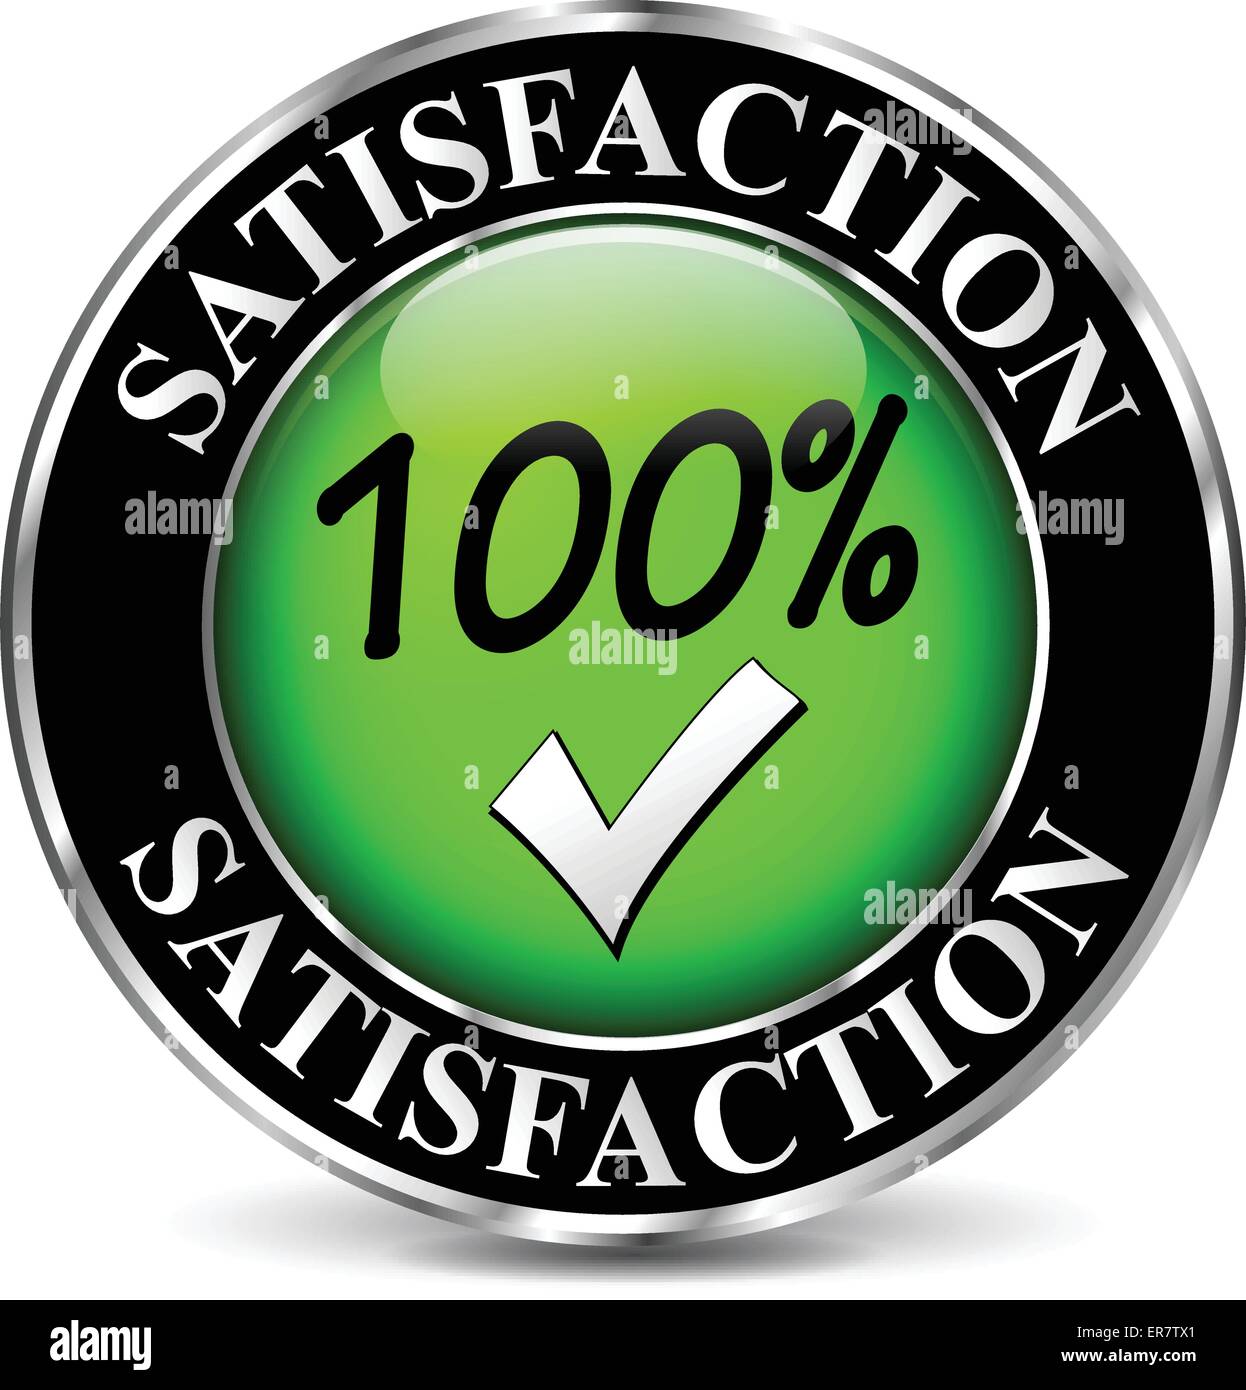 Vektor-Illustration von Zufriedenheit grüne Symbol auf weißem Hintergrund Stock Vektor